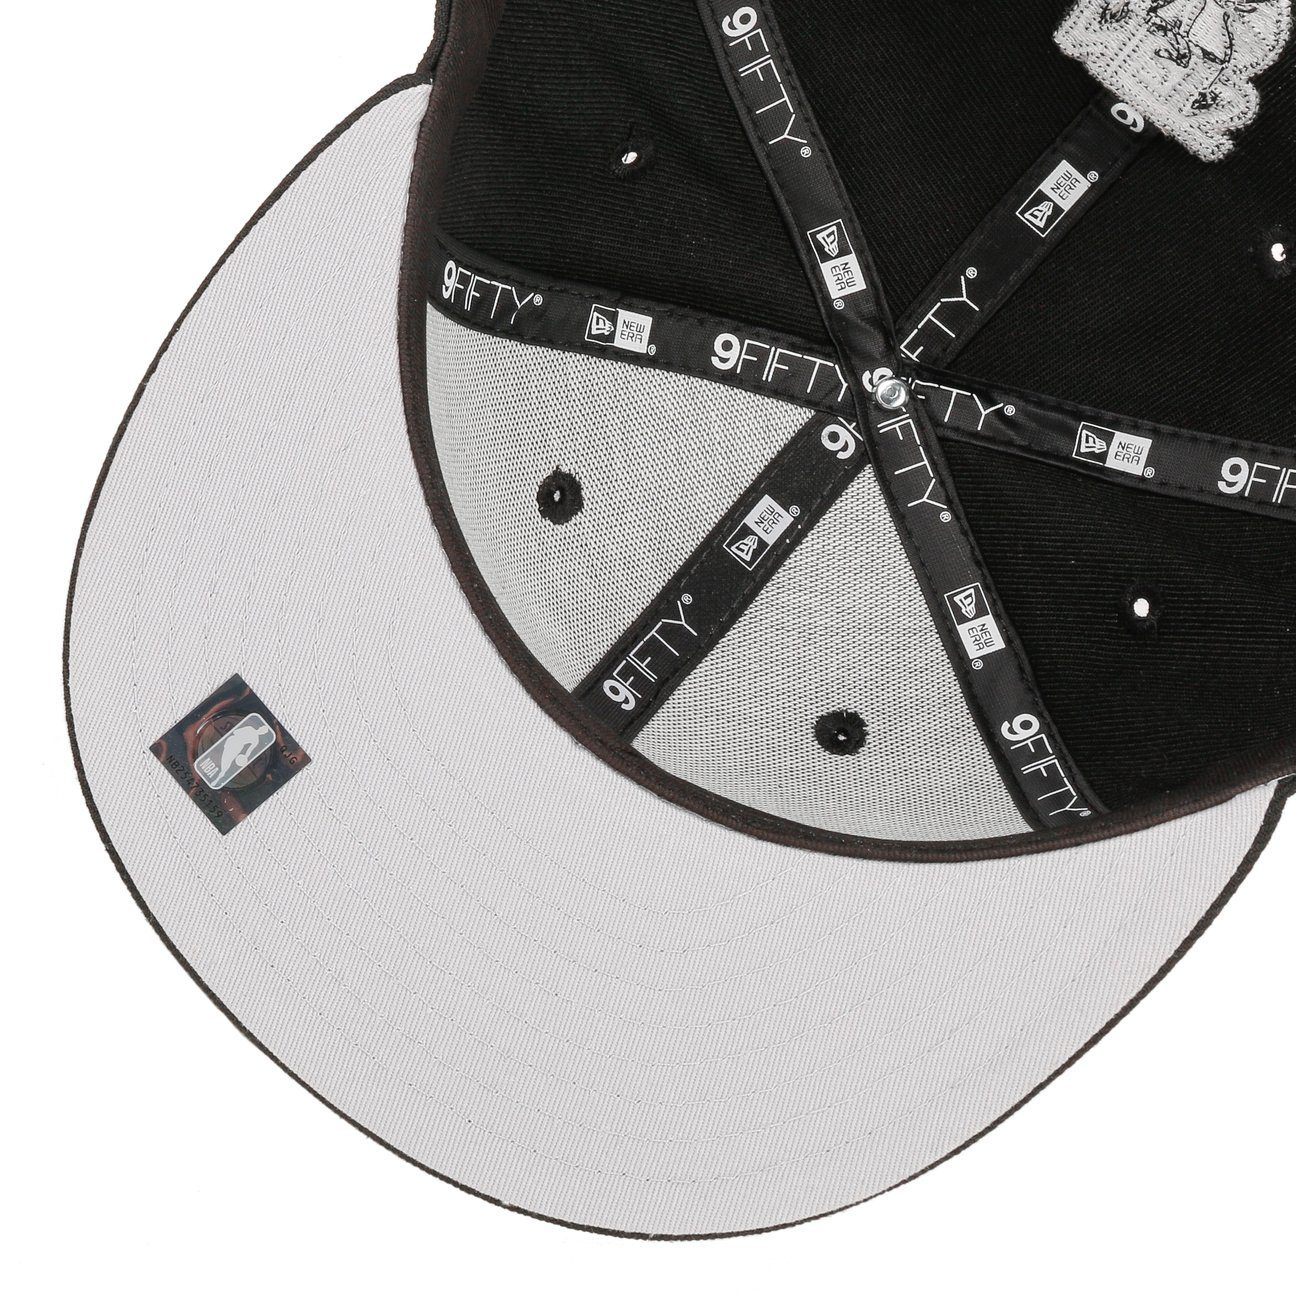 New Era Baseball Cap (1-St) schwarz Snapback Basecap